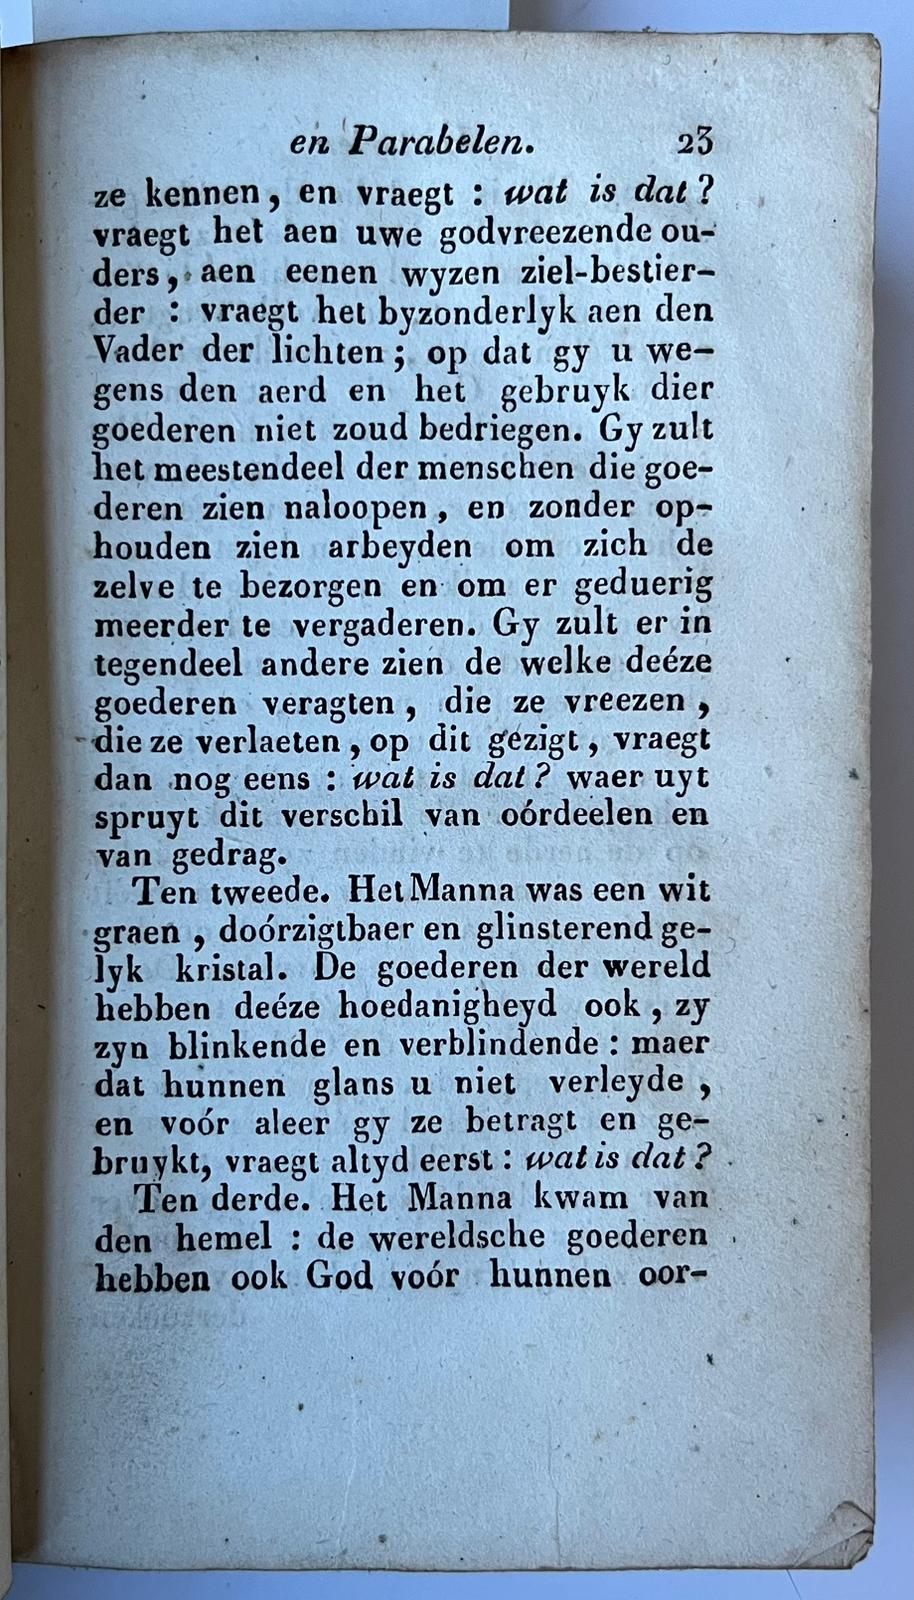 [Literature 1828] Historien en parabelen van pater Bonaventura. Vert. uit het Frans. Mechelen, P.J. Hanicq, 1828, 8, 278 [2] pp.